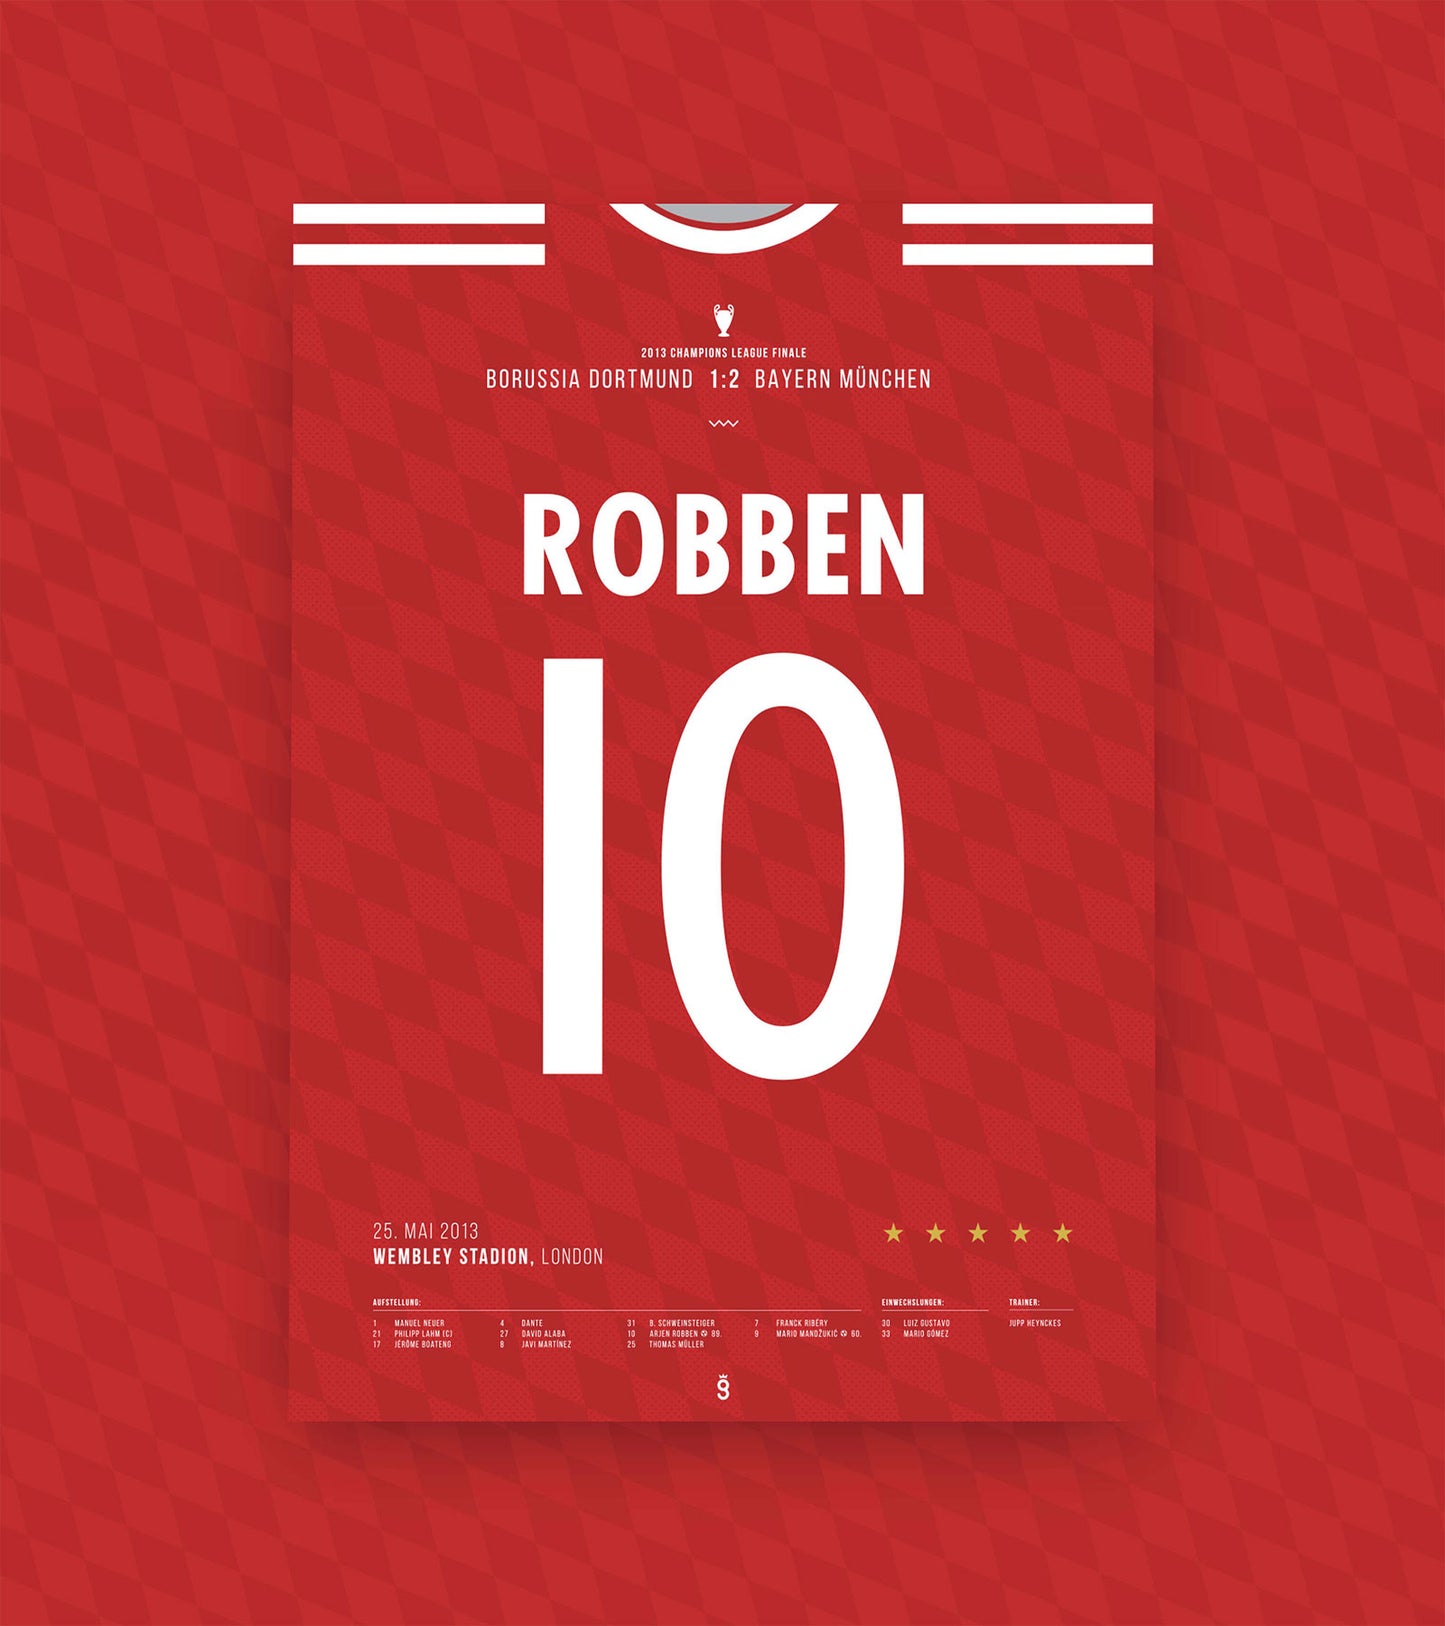 Arjen Robben's winning goal in the 2013 UCL Final (Jersey ver.)